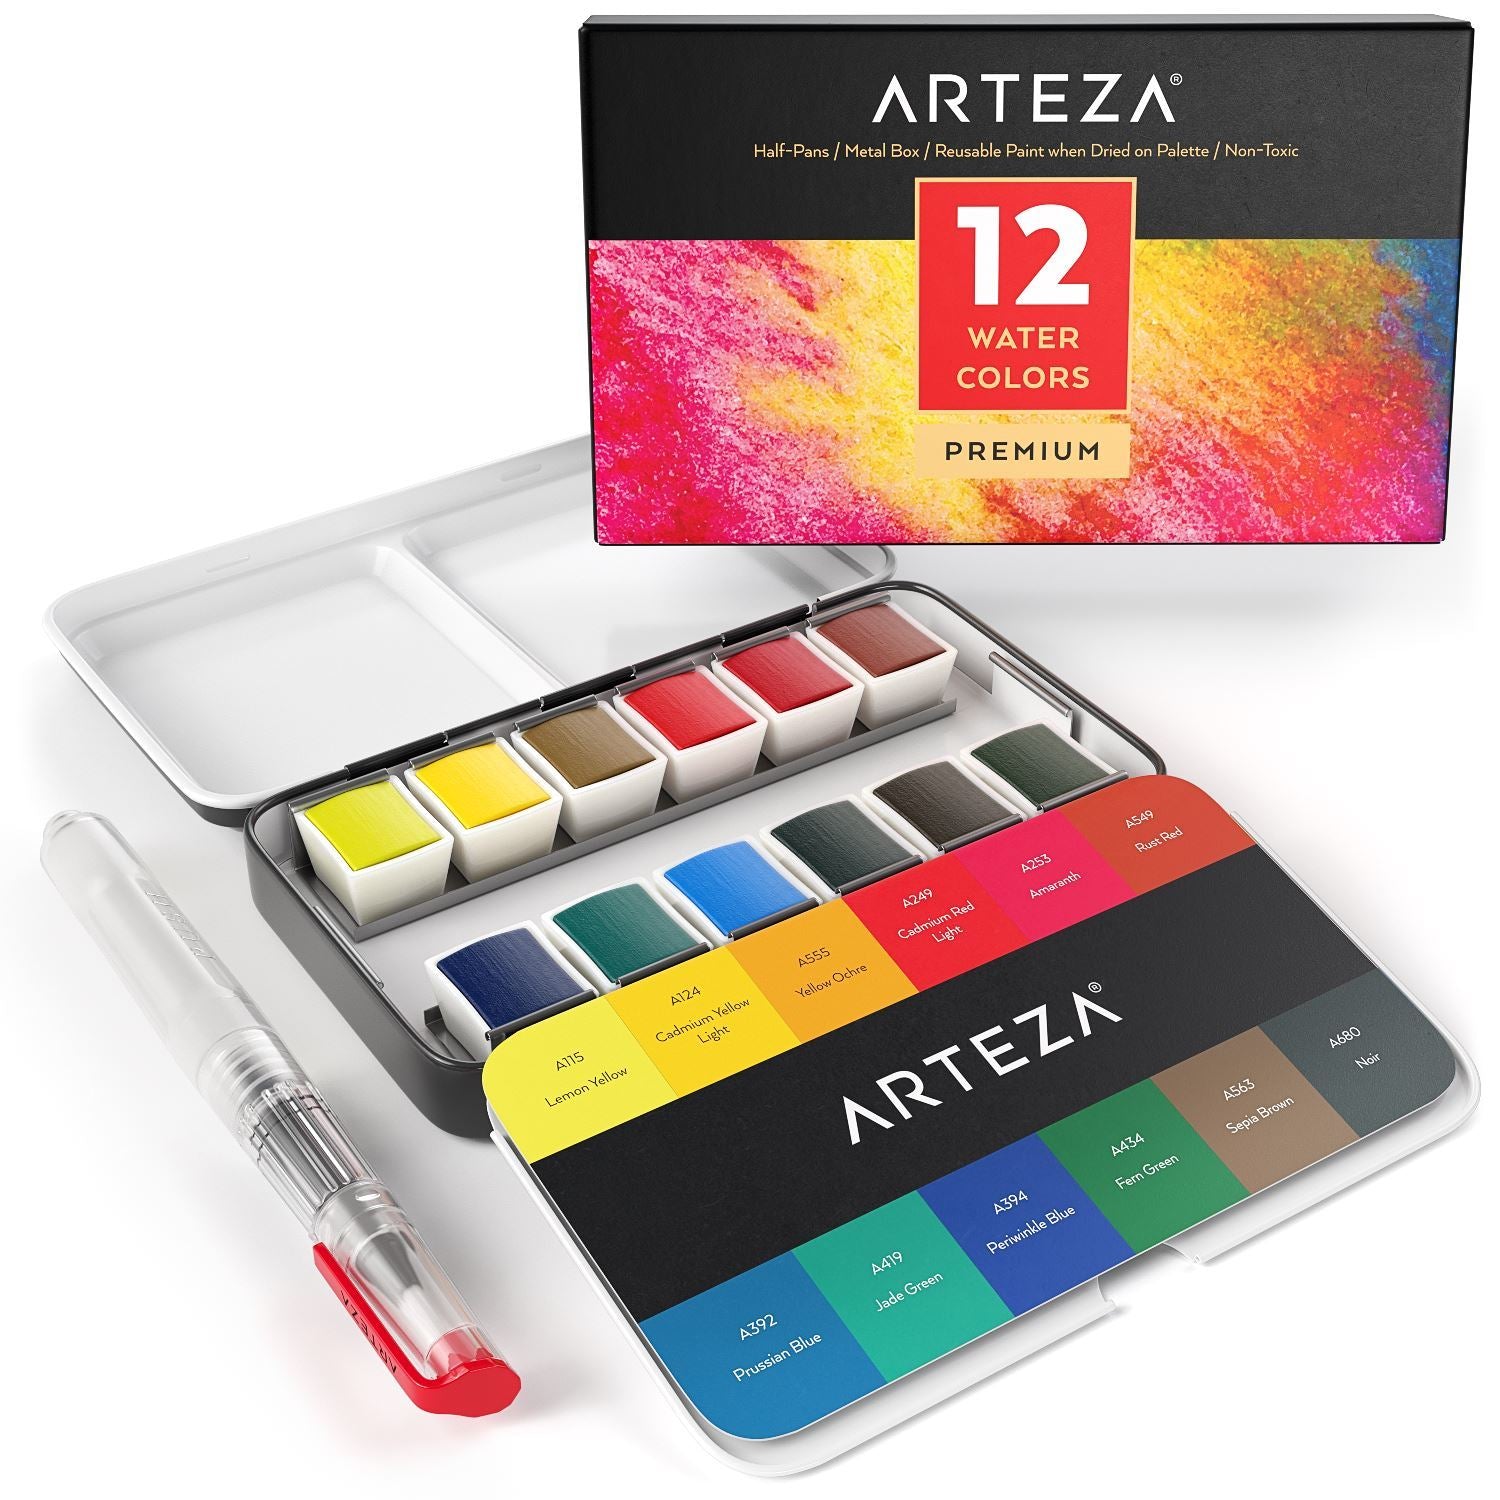 Arteza Watercolor Premium Artist Paint, Half Pans - Set of 12